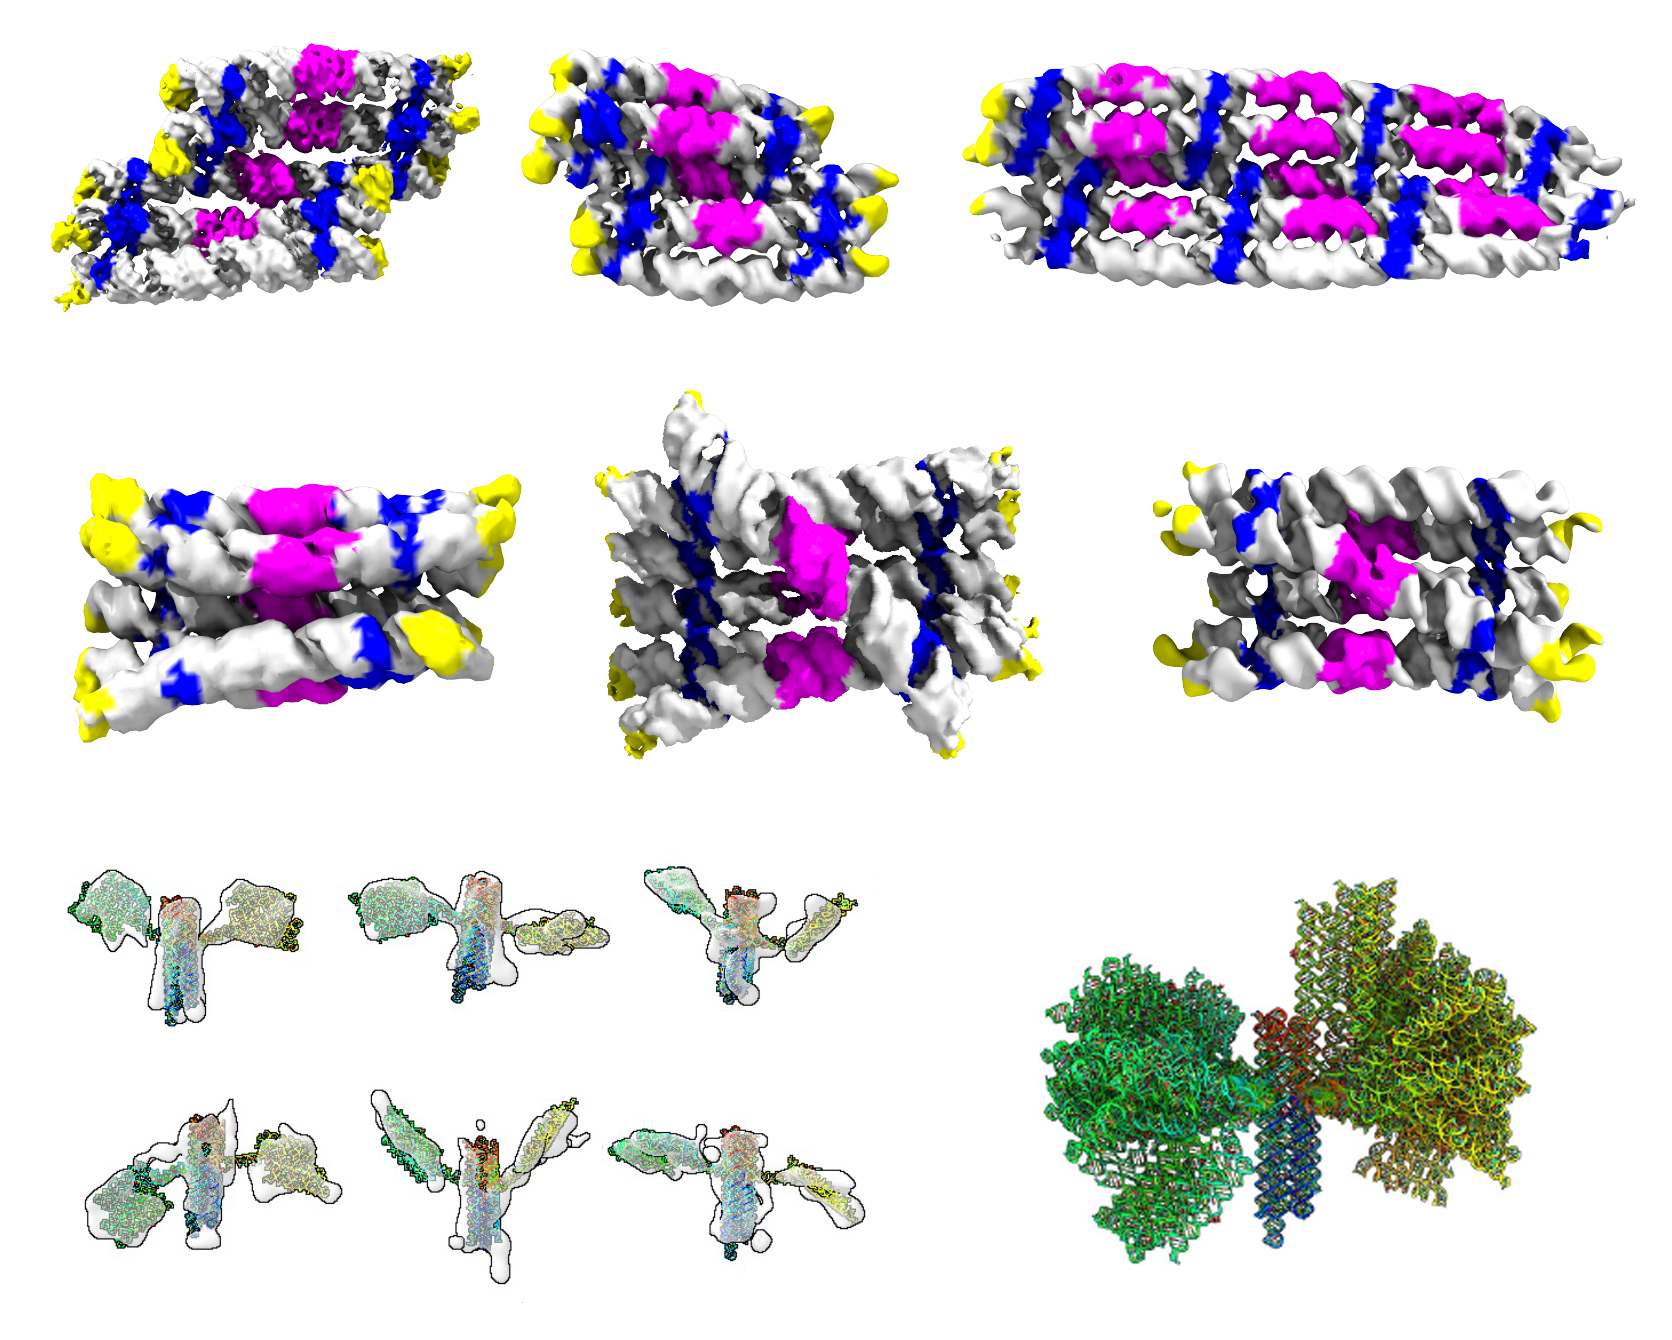 Galleri over de forskellige RNA-origami-strukturer, der blev bestemt ved kryogen-elektronmikroskopi og tomografi. De to øverste rækker viser strukturer af RNA-rektangler og cylindre farvet af RNA-motiver. Nederste række viser strukturer af nanosatellitten fra 5' til 3' ende (læseretningen for en RNA-streng).